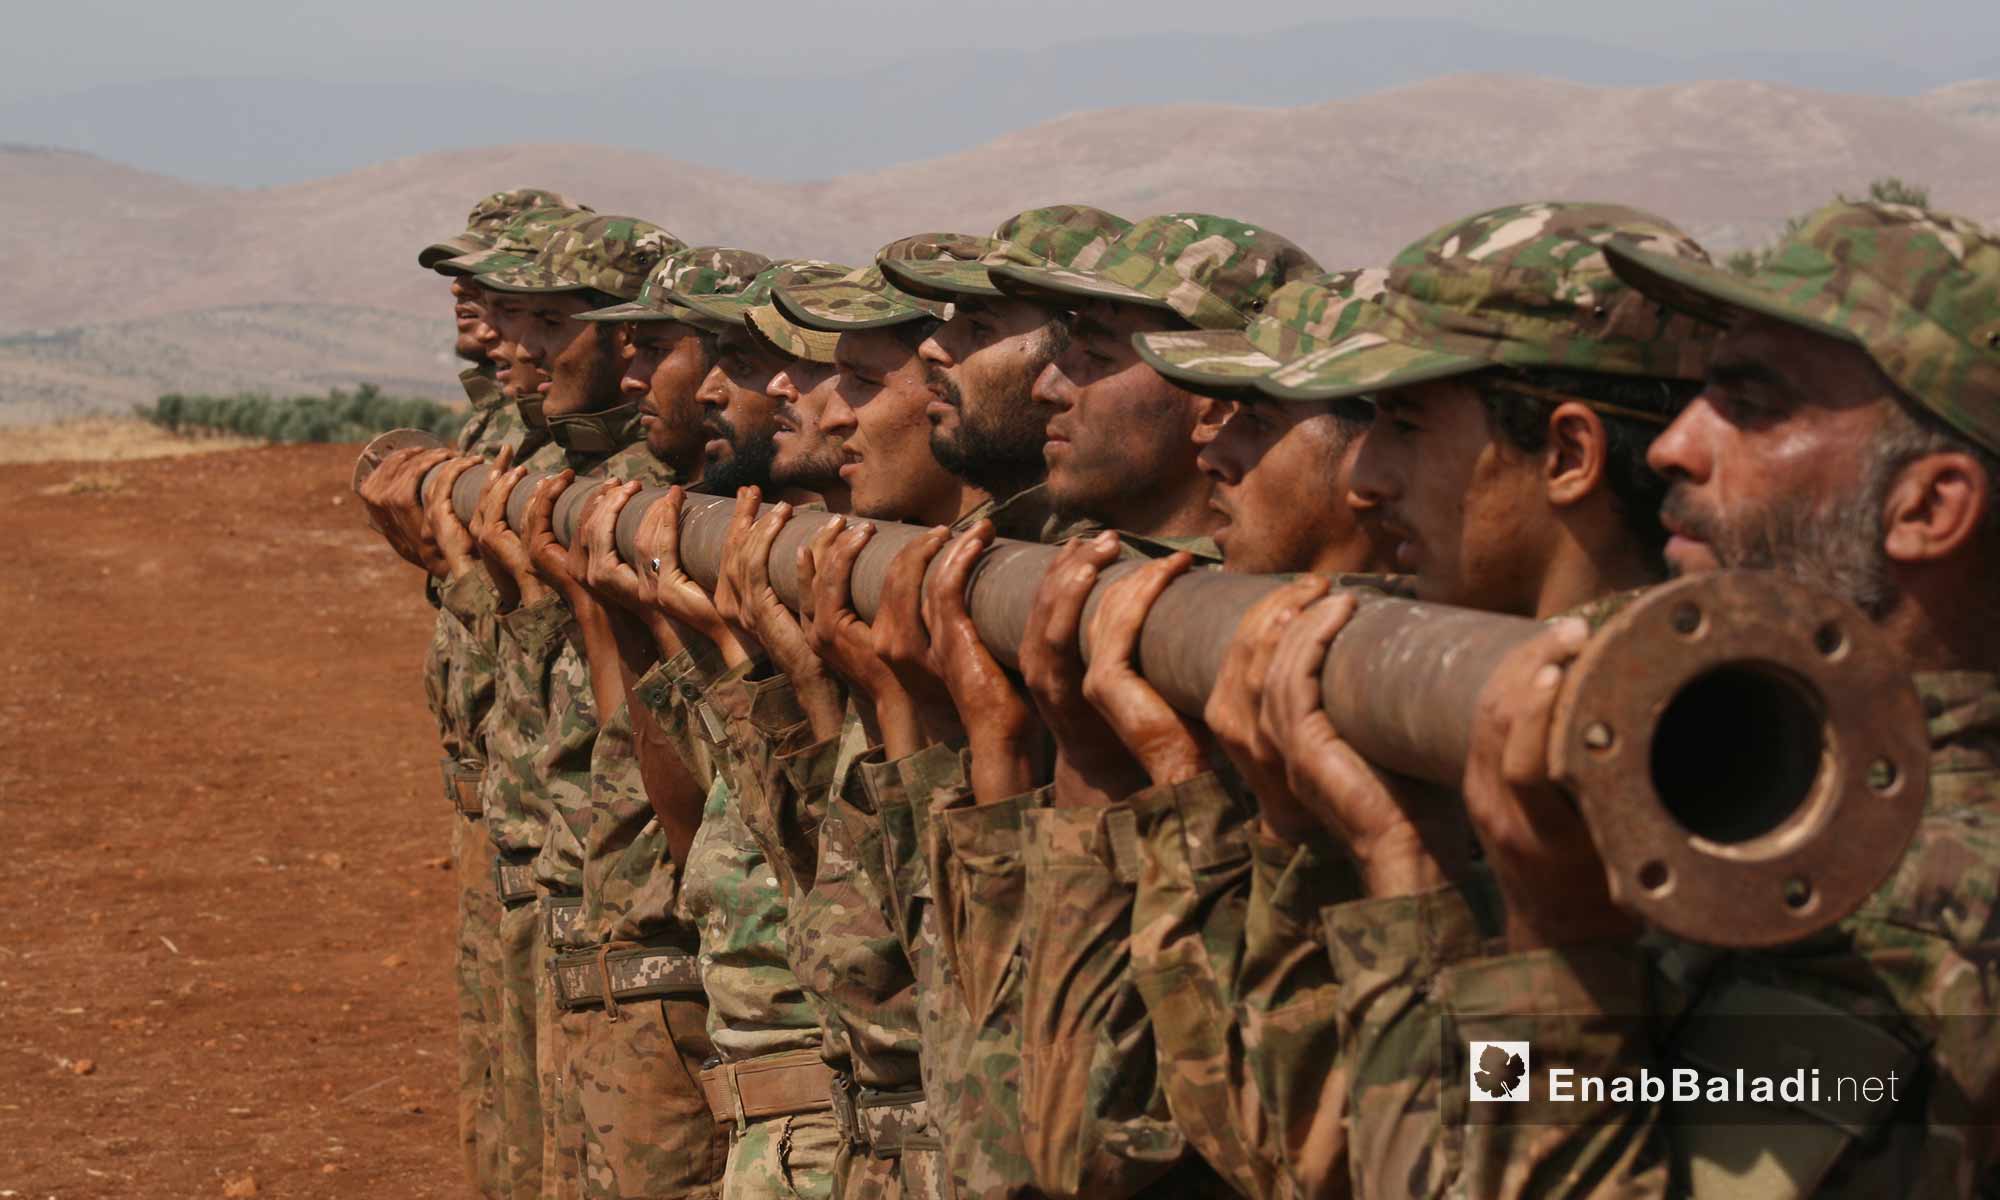 تخريج الدفعة الثانية من قوات المهام الخاصة التابعة لجيش النصر بريف حماة الشمالي - 17 أيلول 2017 (عنب بلدي)